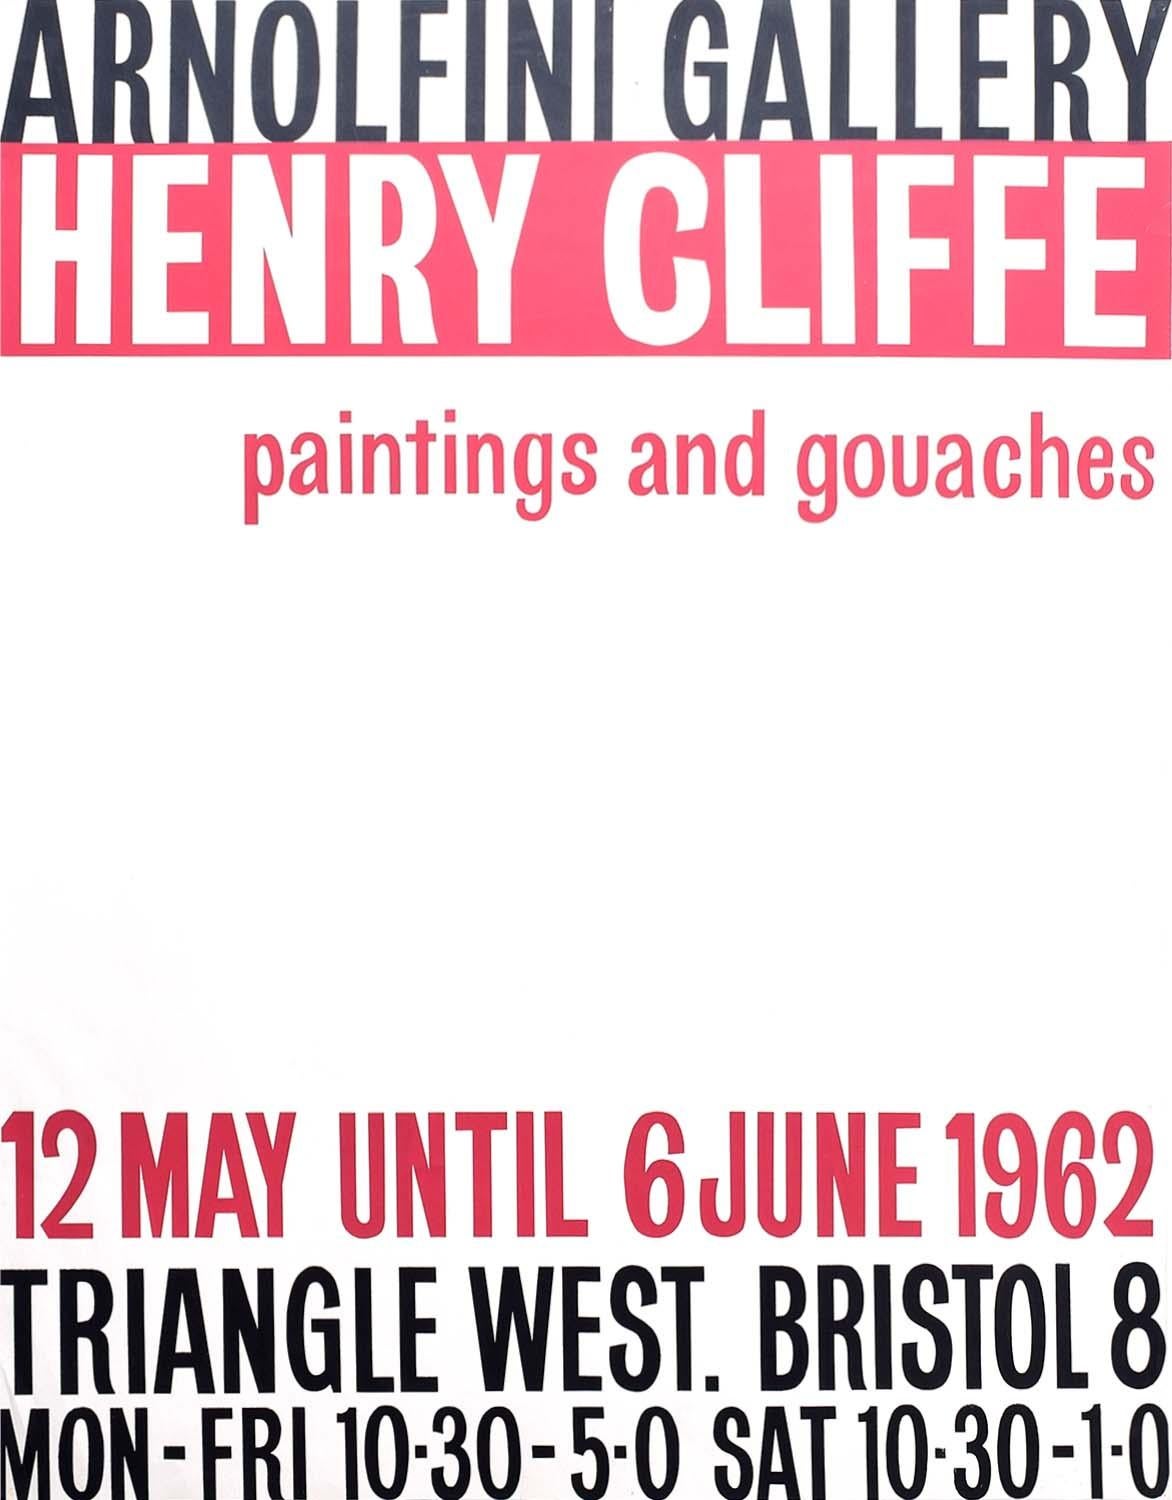 Pour voir nos autres œuvres d'art moderne britannique et les œuvres de Henry Cliffe, faites défiler l'écran jusqu'à "More from this Seller" et cliquez en dessous sur "See all from this Seller" - ou envoyez-nous un message si vous ne trouvez pas